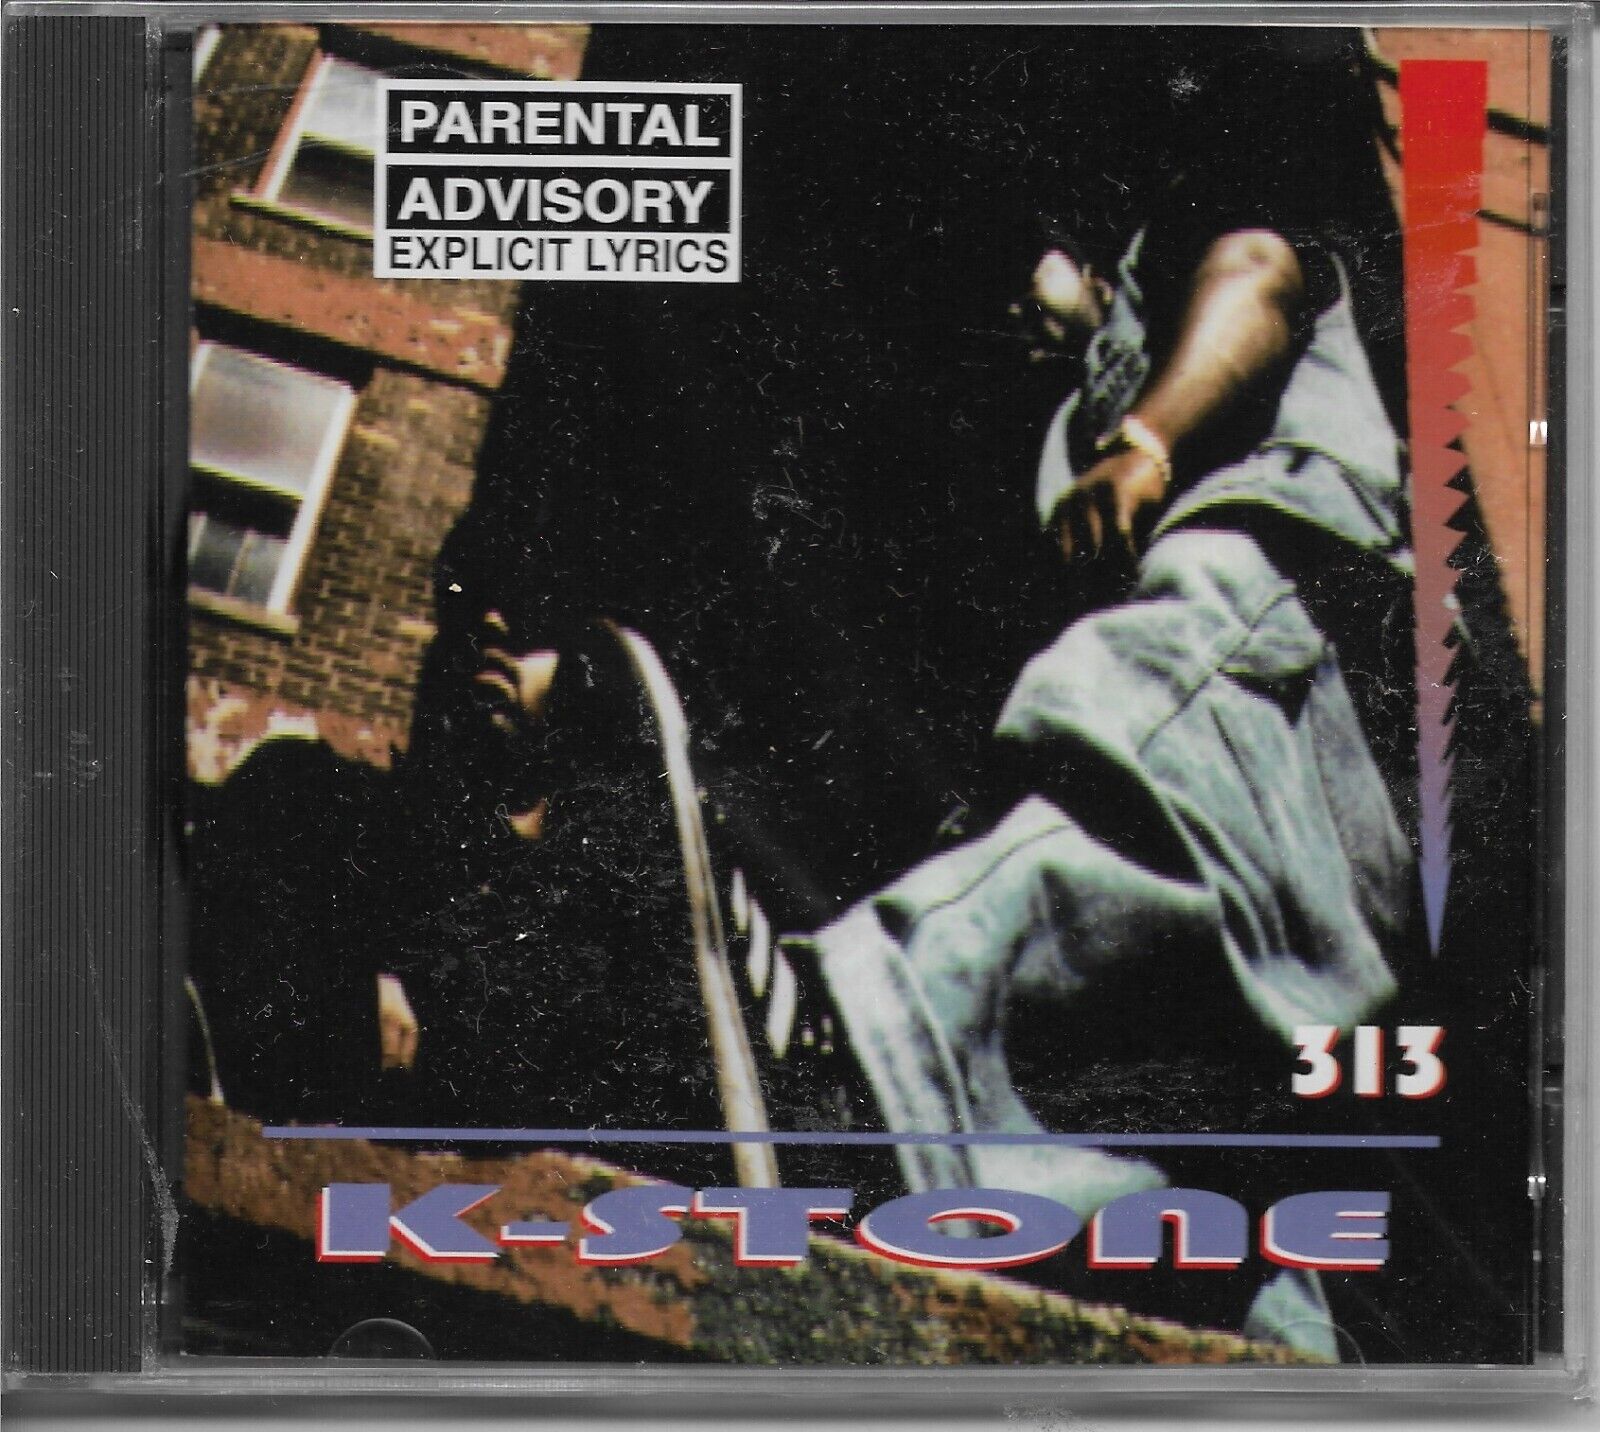 K-Stone 313 Push Play Records 1994